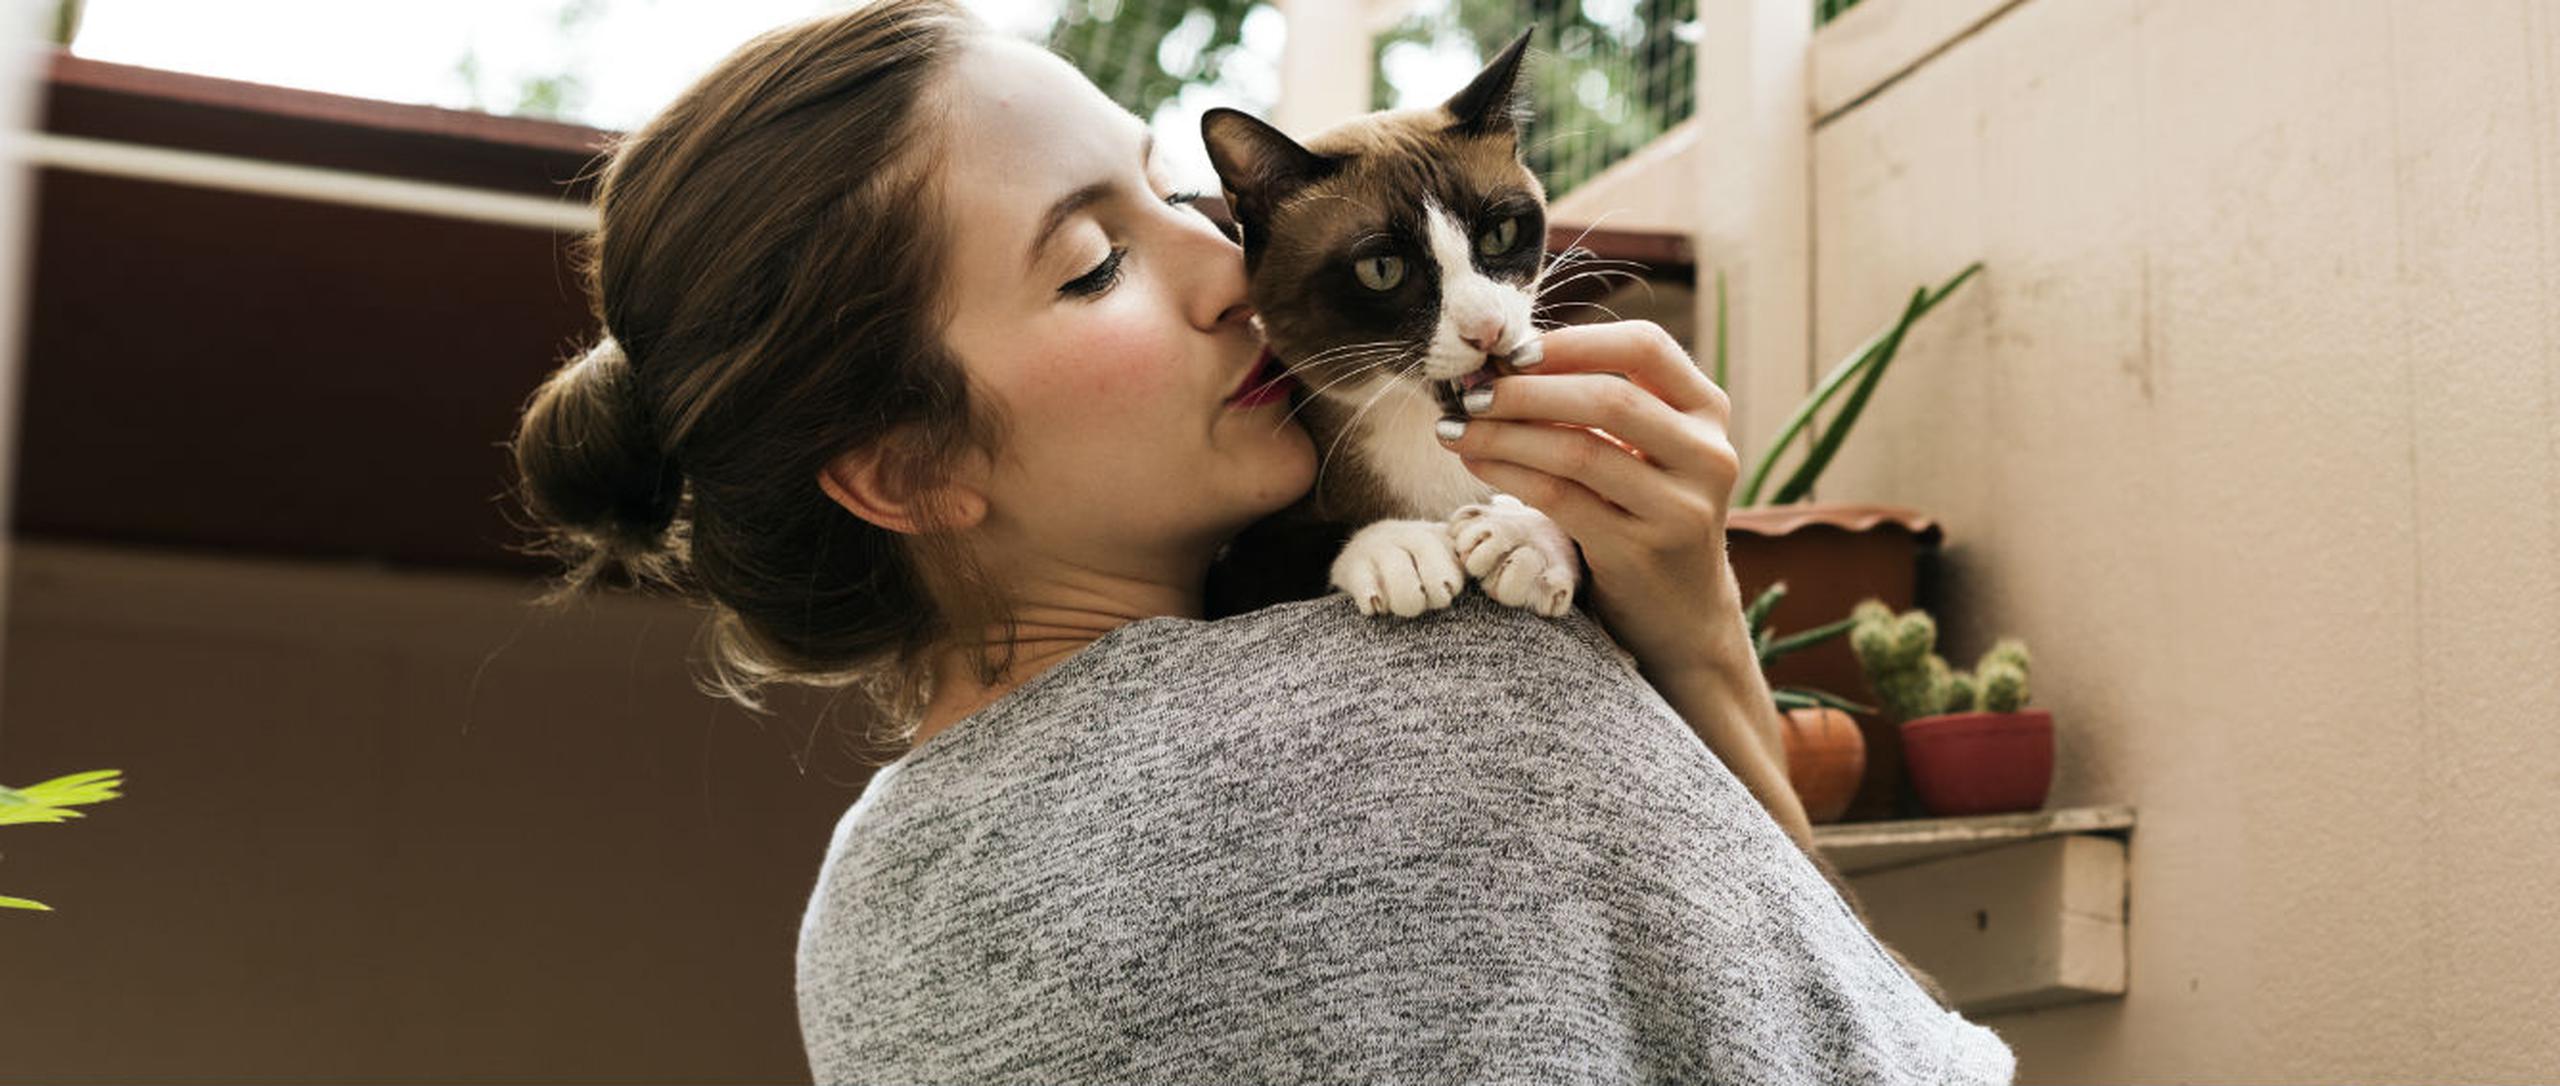 Más que una moda, los gatos son un gran compromiso. (Shutterstock)